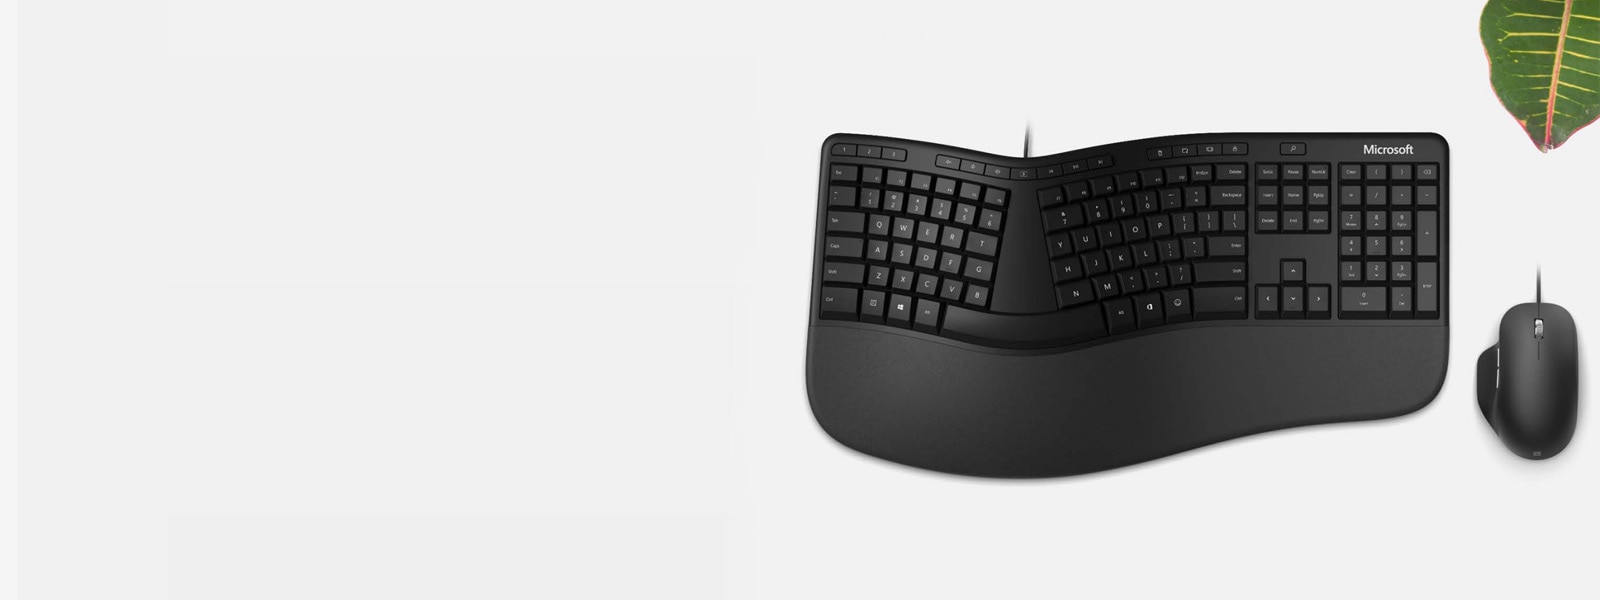 Клавиатура и мышь из серии Microsoft Ergonomic на столе рядом с растением
